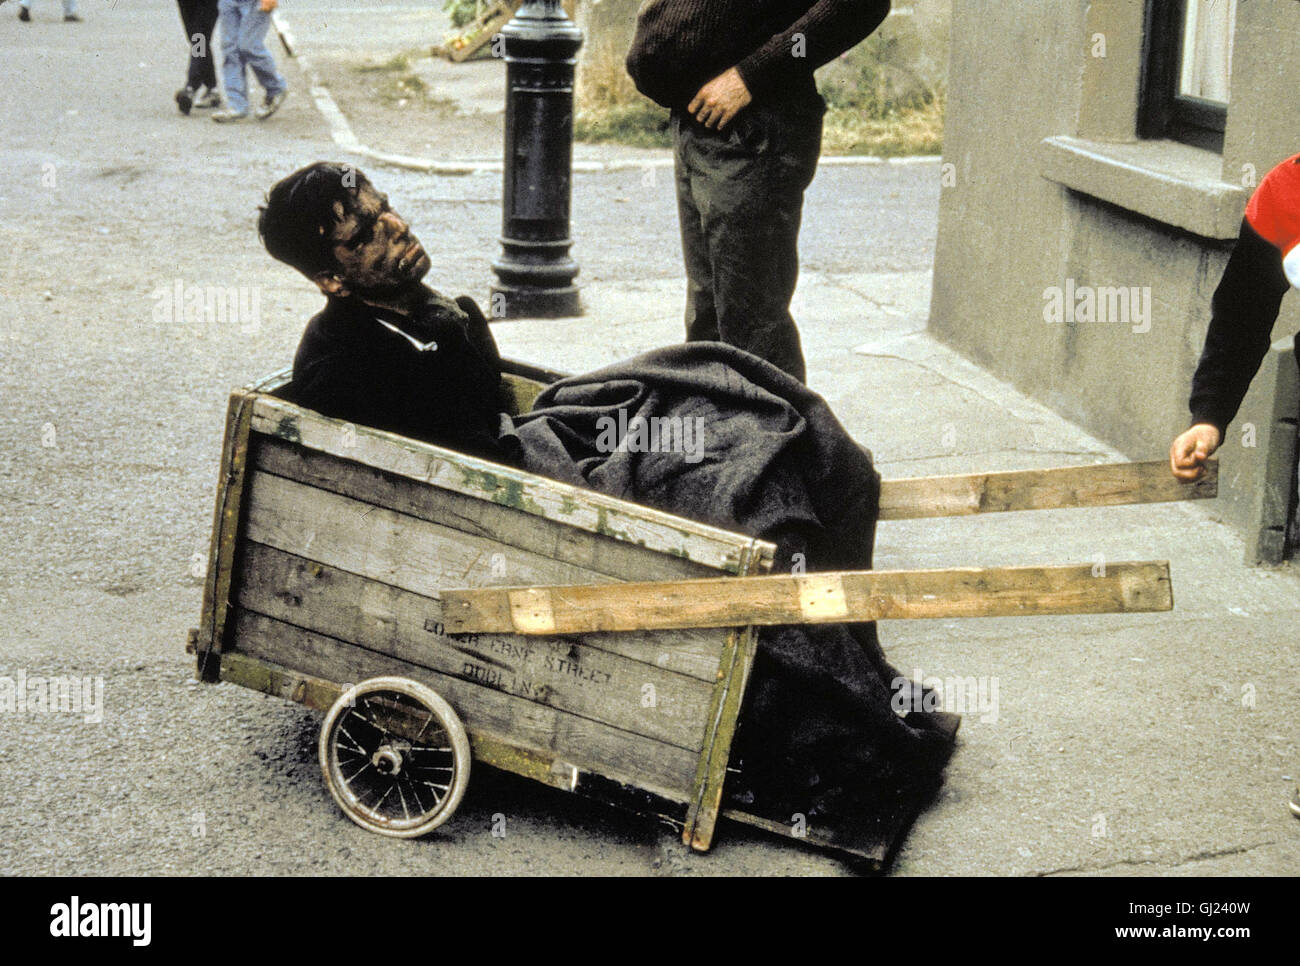 MEIN LINKER FUSS- der schwerstbehinderte Christy Brown (Daniel Day Lewis)  wird erst gefördert, als es ihm gelingt, mit seinem Fuß linken Zeichen  senneur Intelligenz zu geben. Regie : Jim Sheridan aka. Mon